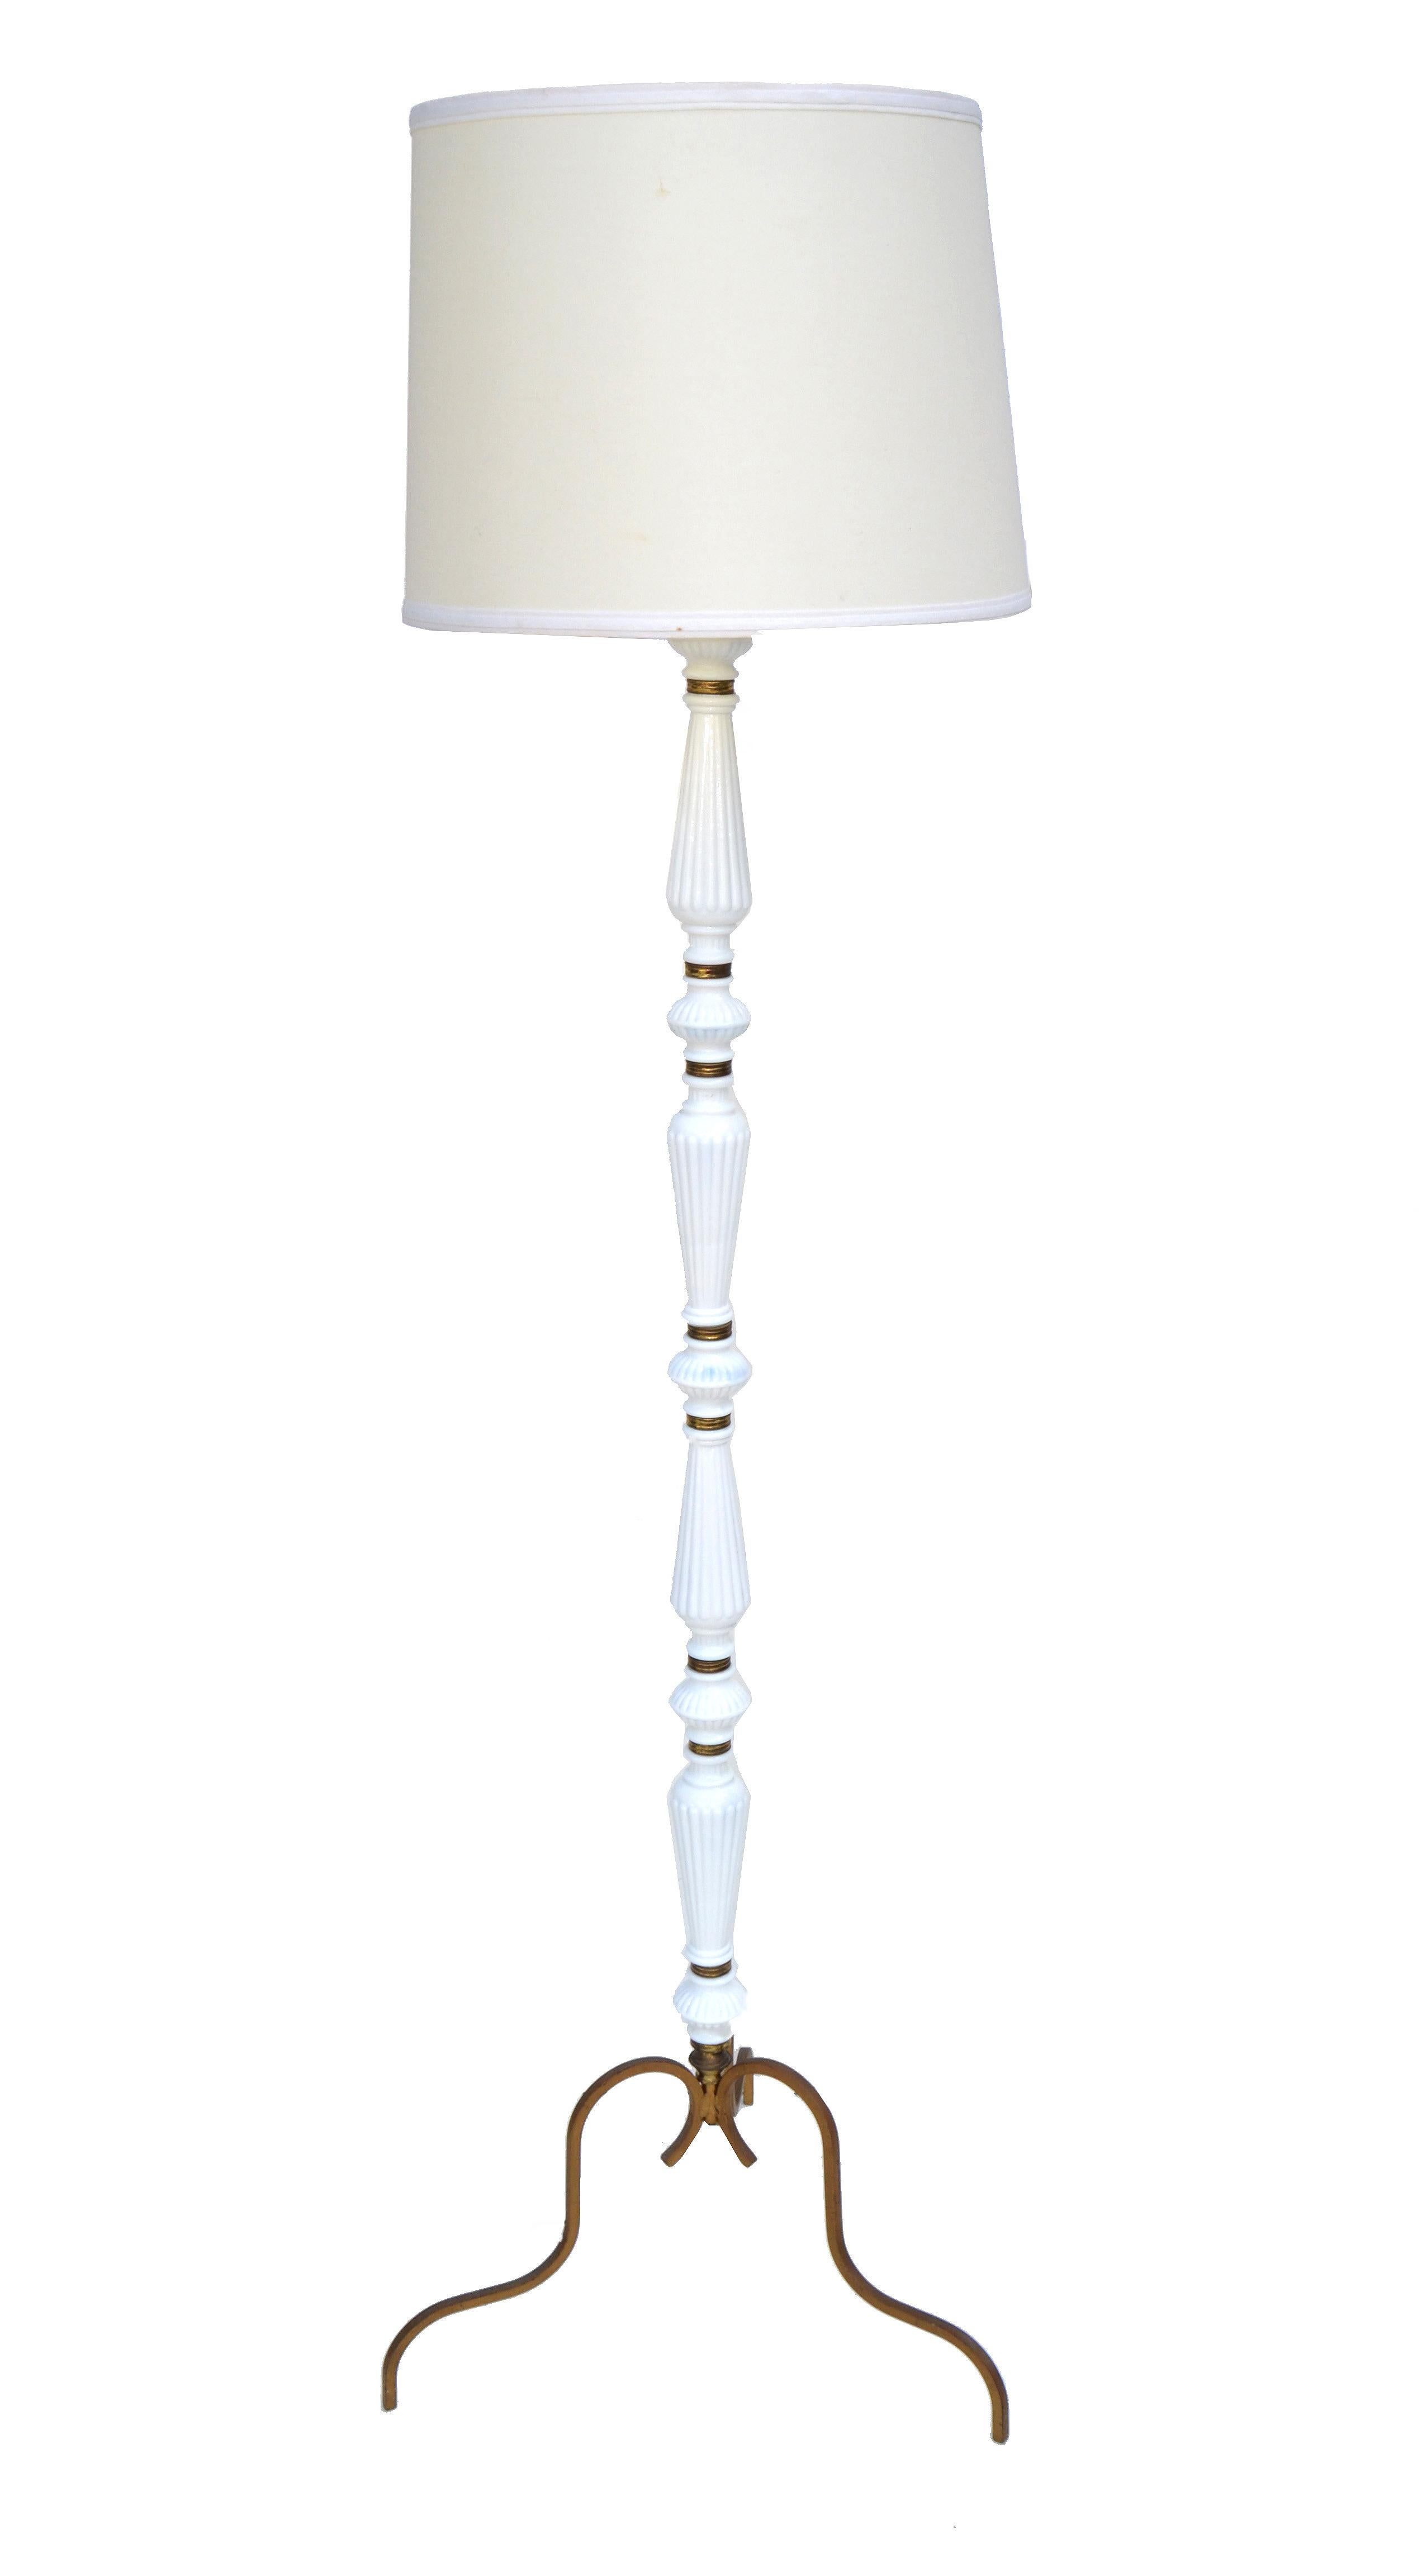 Sehr seltene und elegante französische Art Deco Stehlampe aus weißem Opalin und Messing.
Verdrahtet für die USA und in funktionsfähigem Zustand.
Für eine herkömmliche oder eine LED-Glühbirne geeignet.